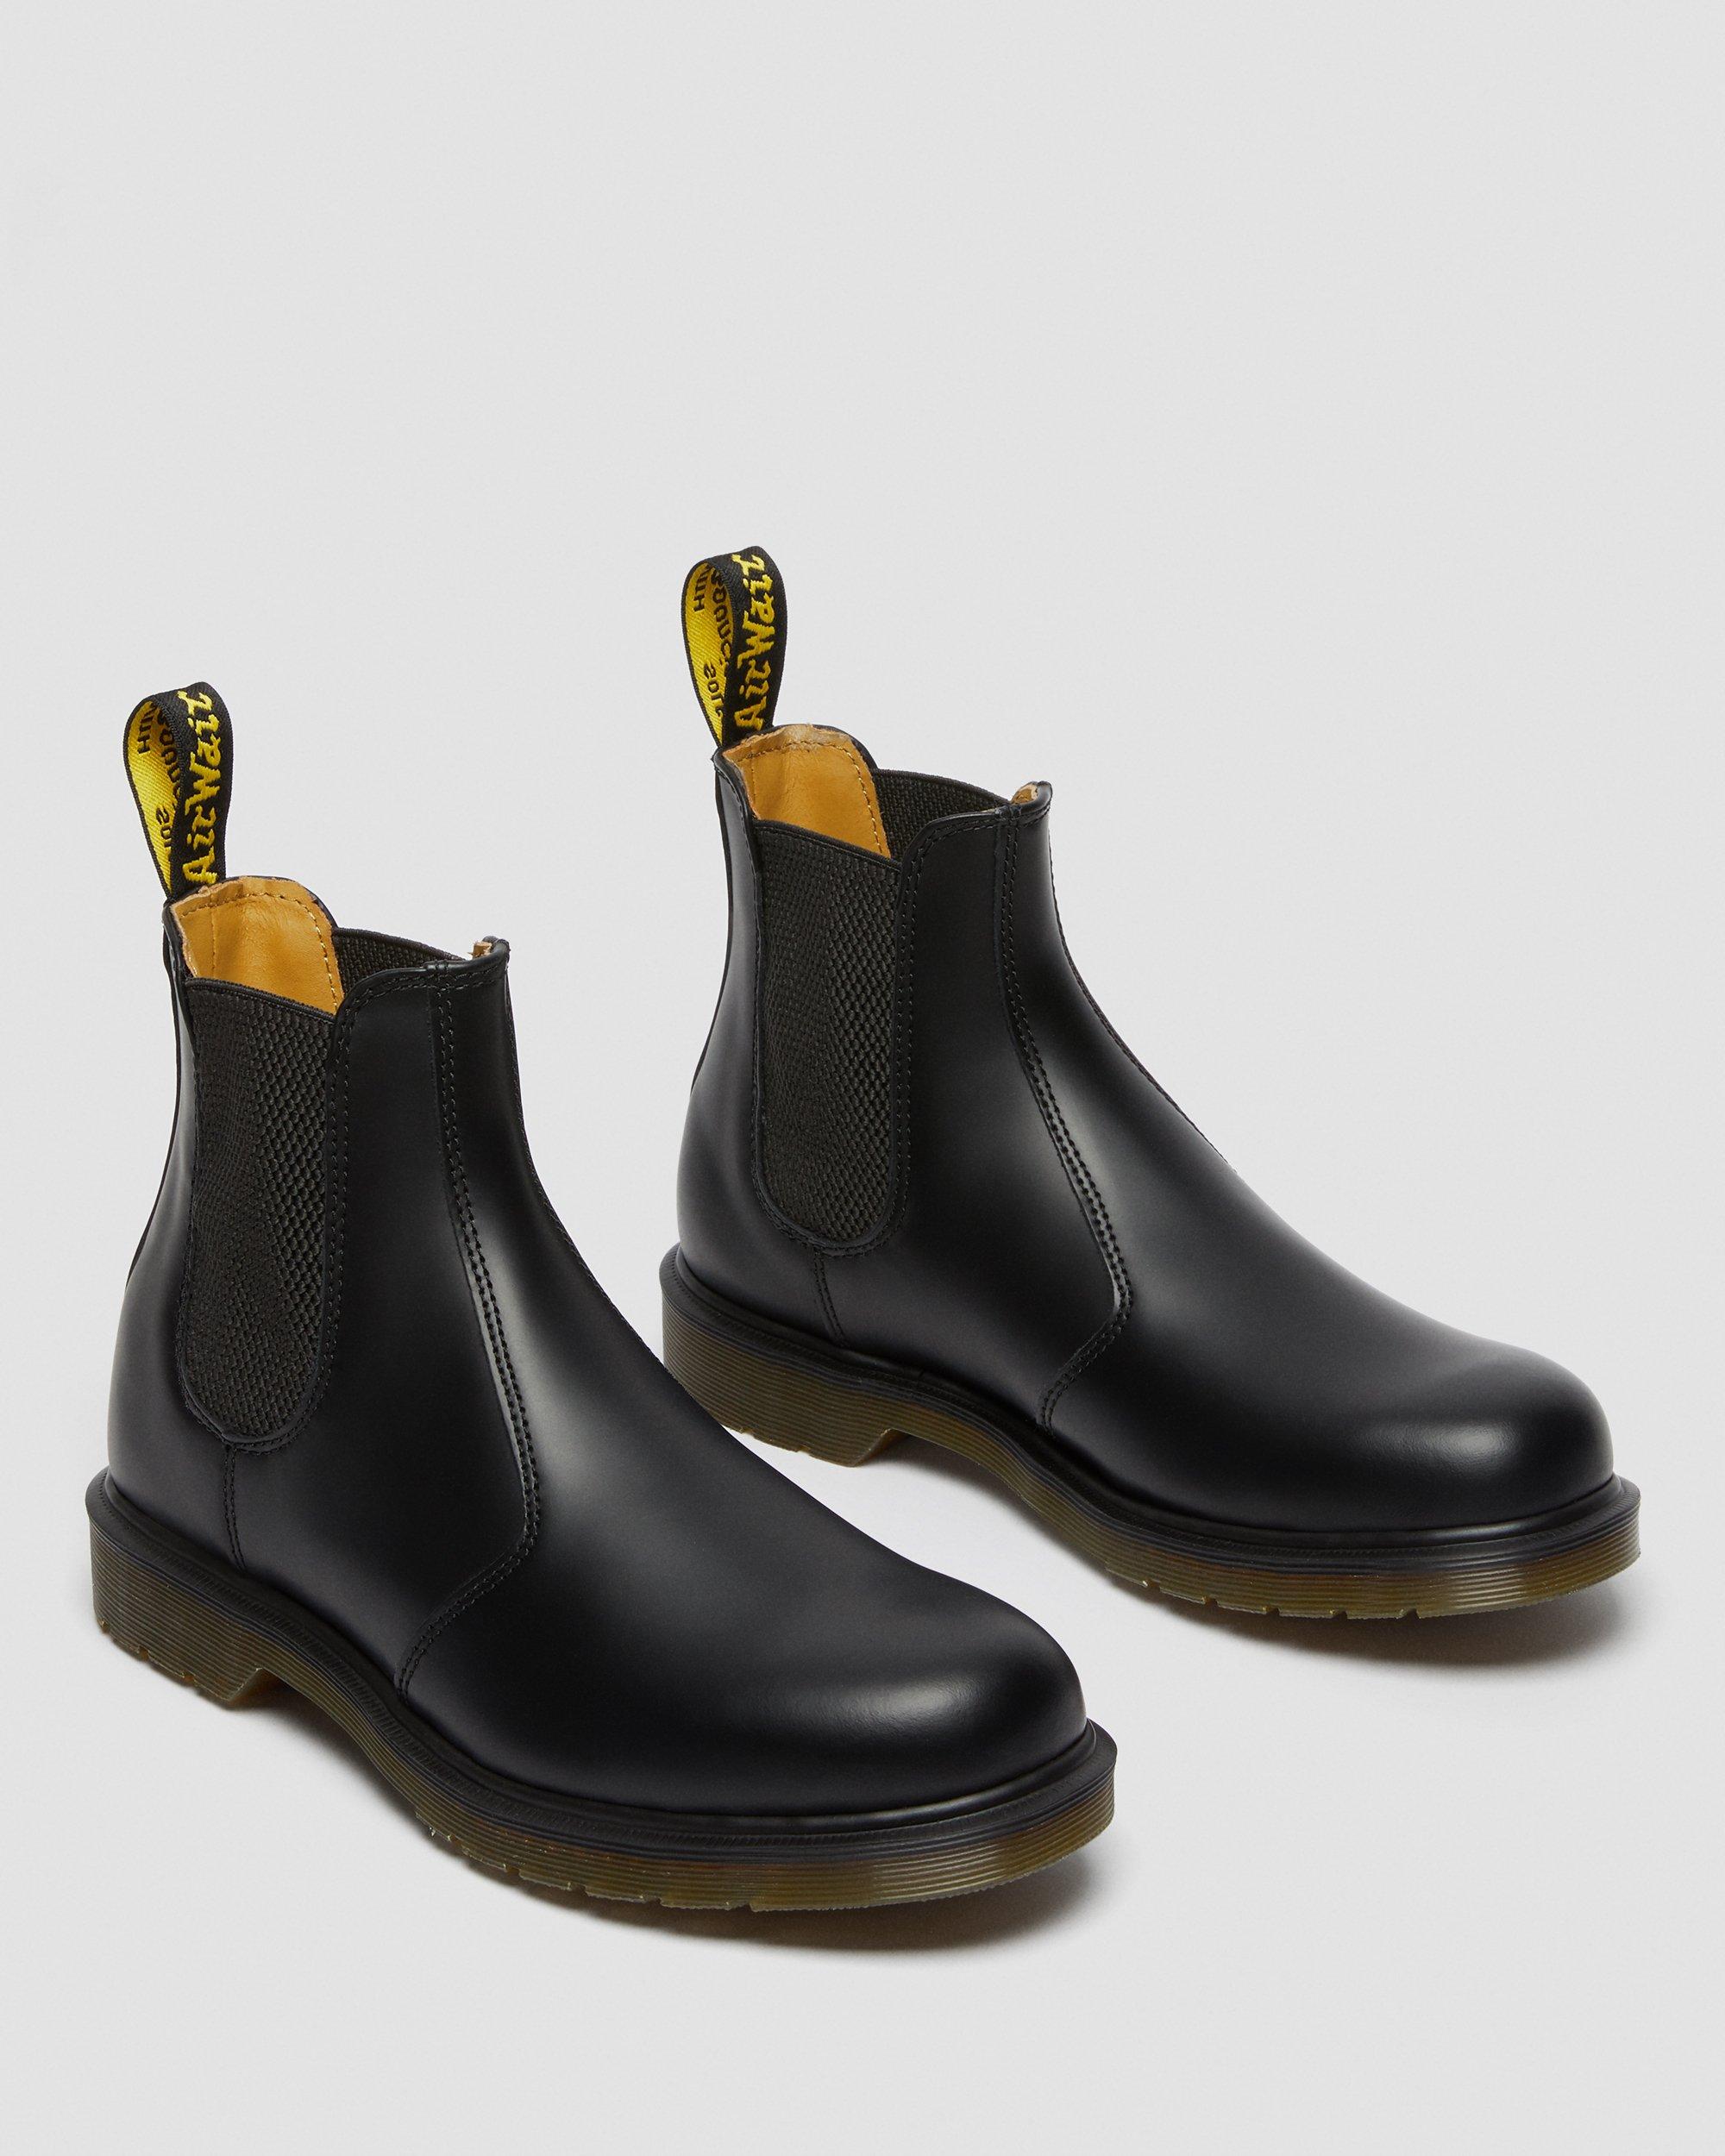 Dr. Doc Martens 2976 Black Leather Chelsea Boots Men's US Size 11 Men’s 